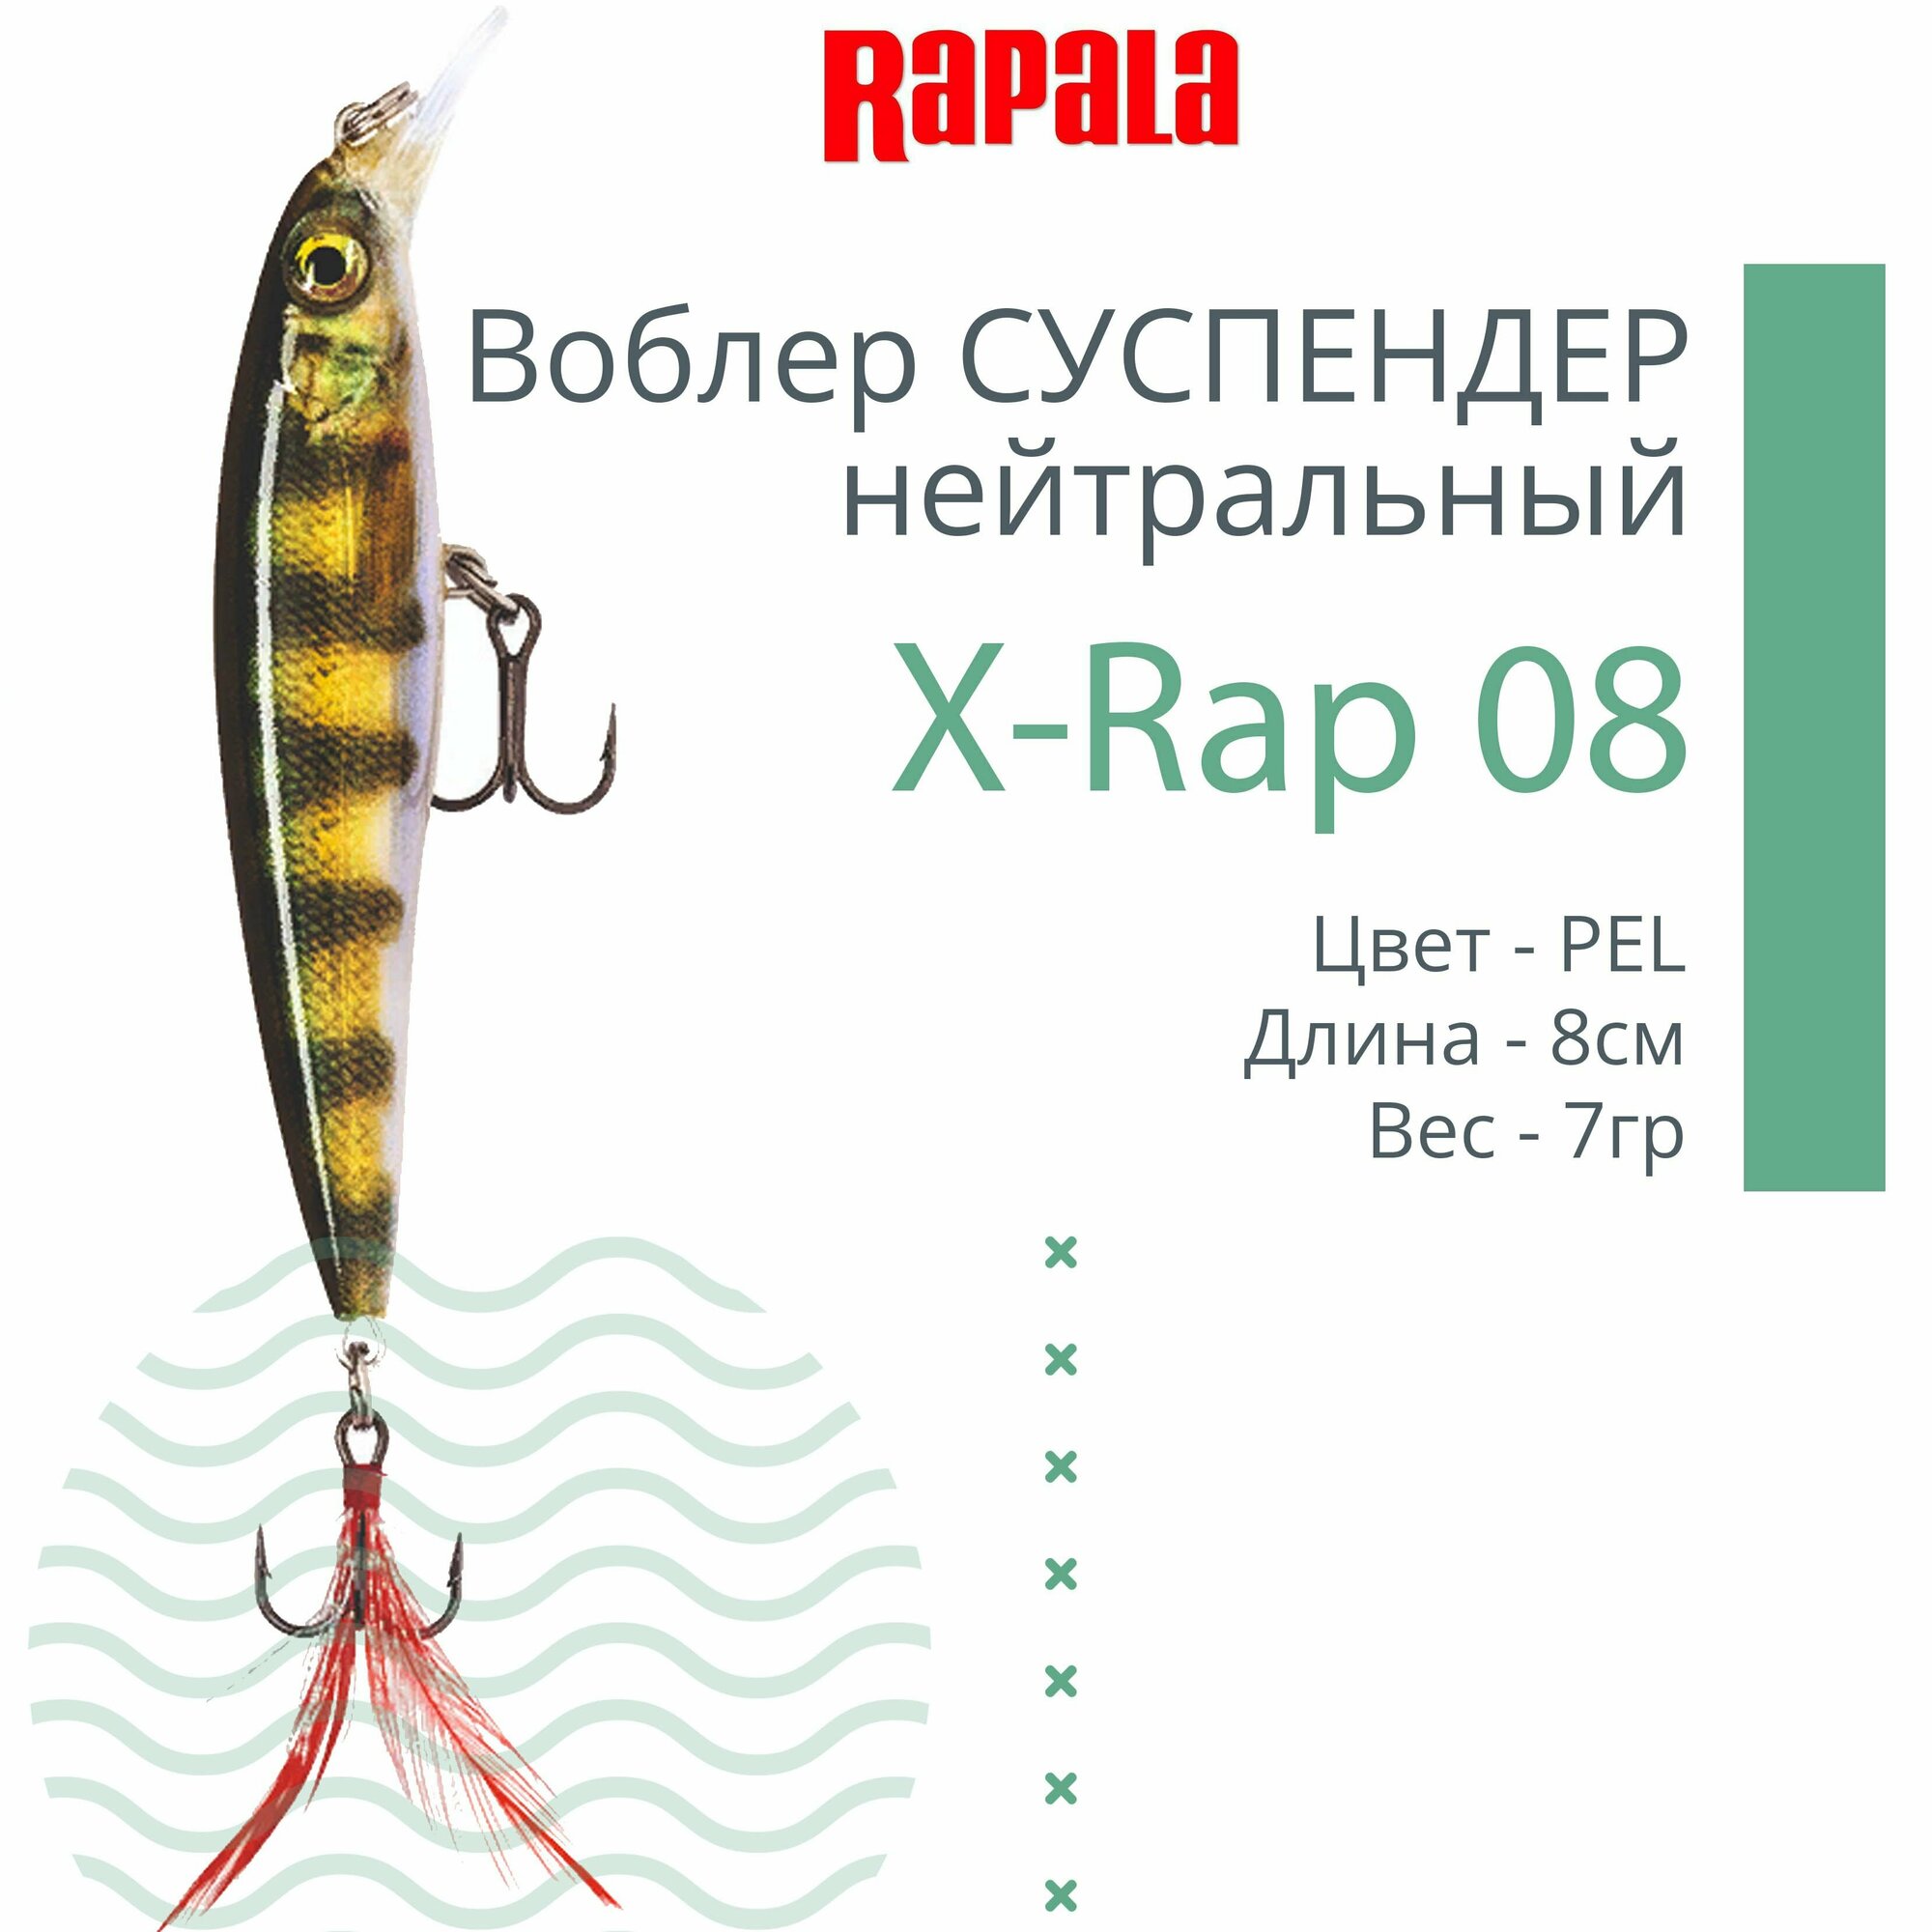 Воблер для рыбалки RAPALA X-Rap 08, 8см, 7гр, цвет PEL, нейтральный